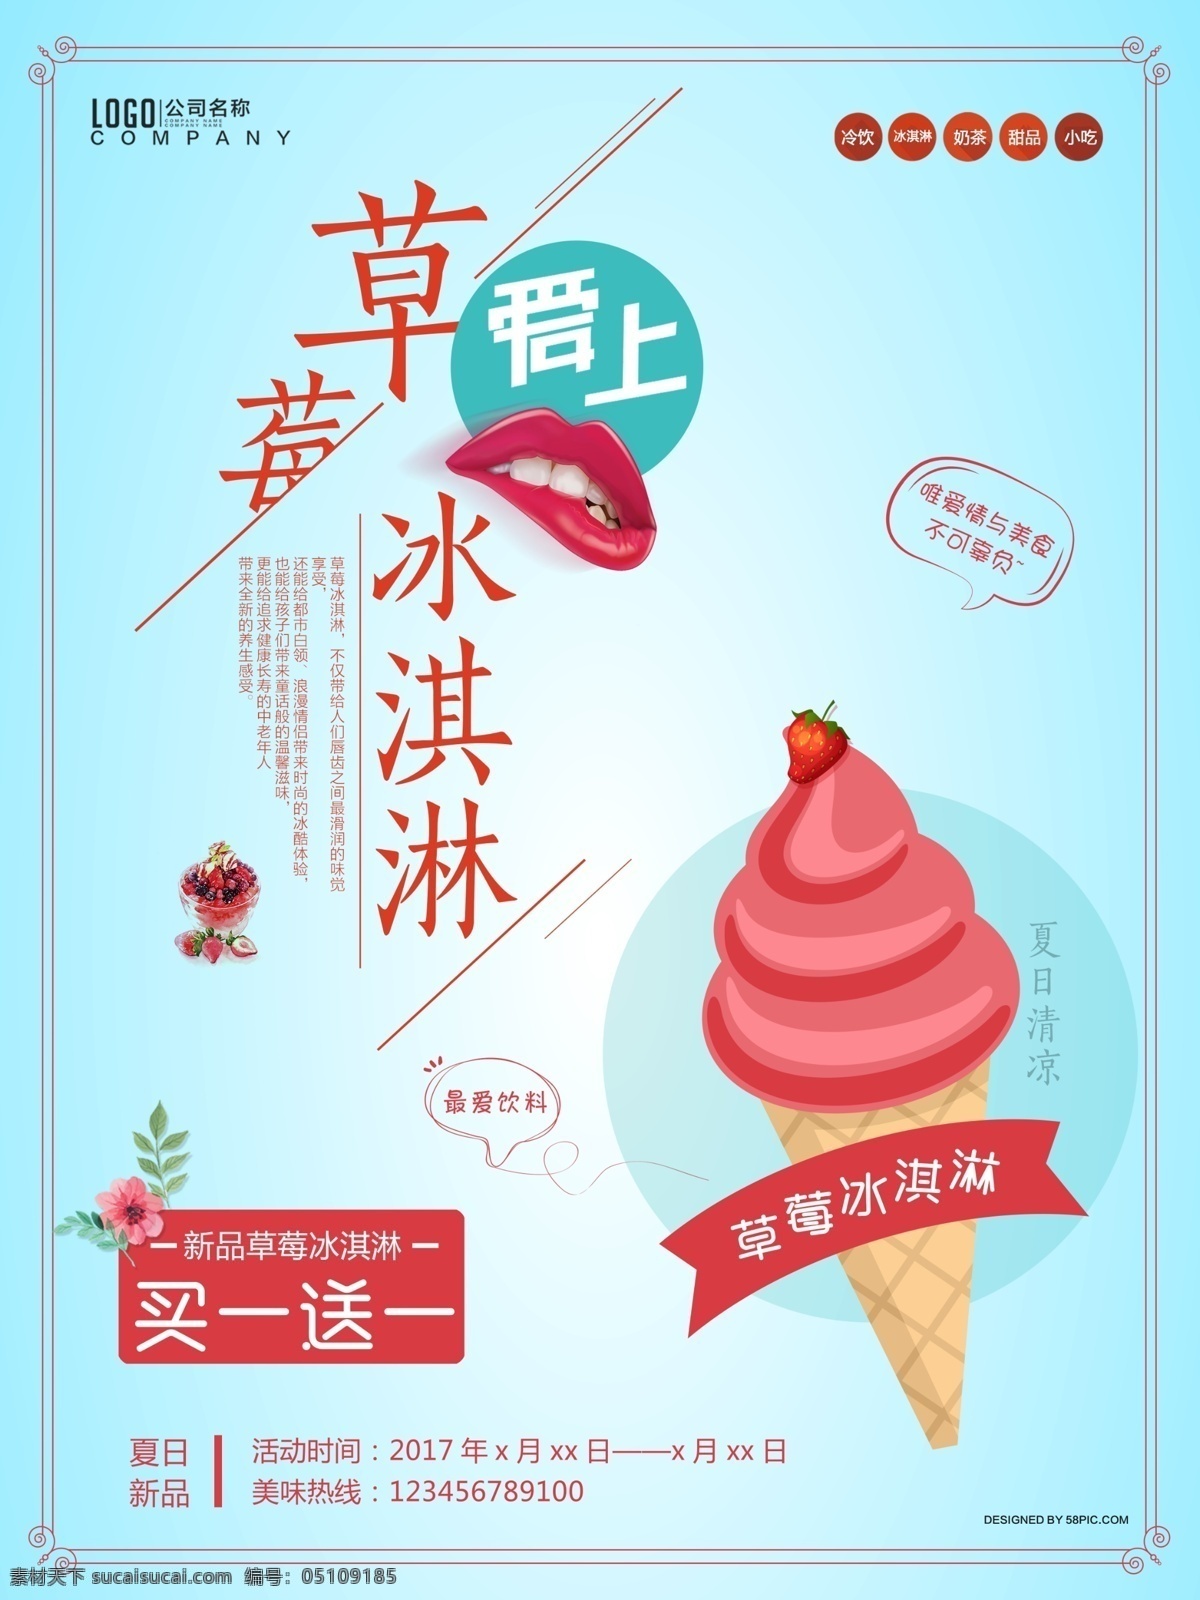 蓝色 清新 甜品 店 冰淇淋 创意 水果雪糕 彩色水果冰棍 海报 草莓 雪糕 冰柜 凉爽 冰淇淋海报 冰淇淋展架 冰淇淋图片 夏天 美食 美味